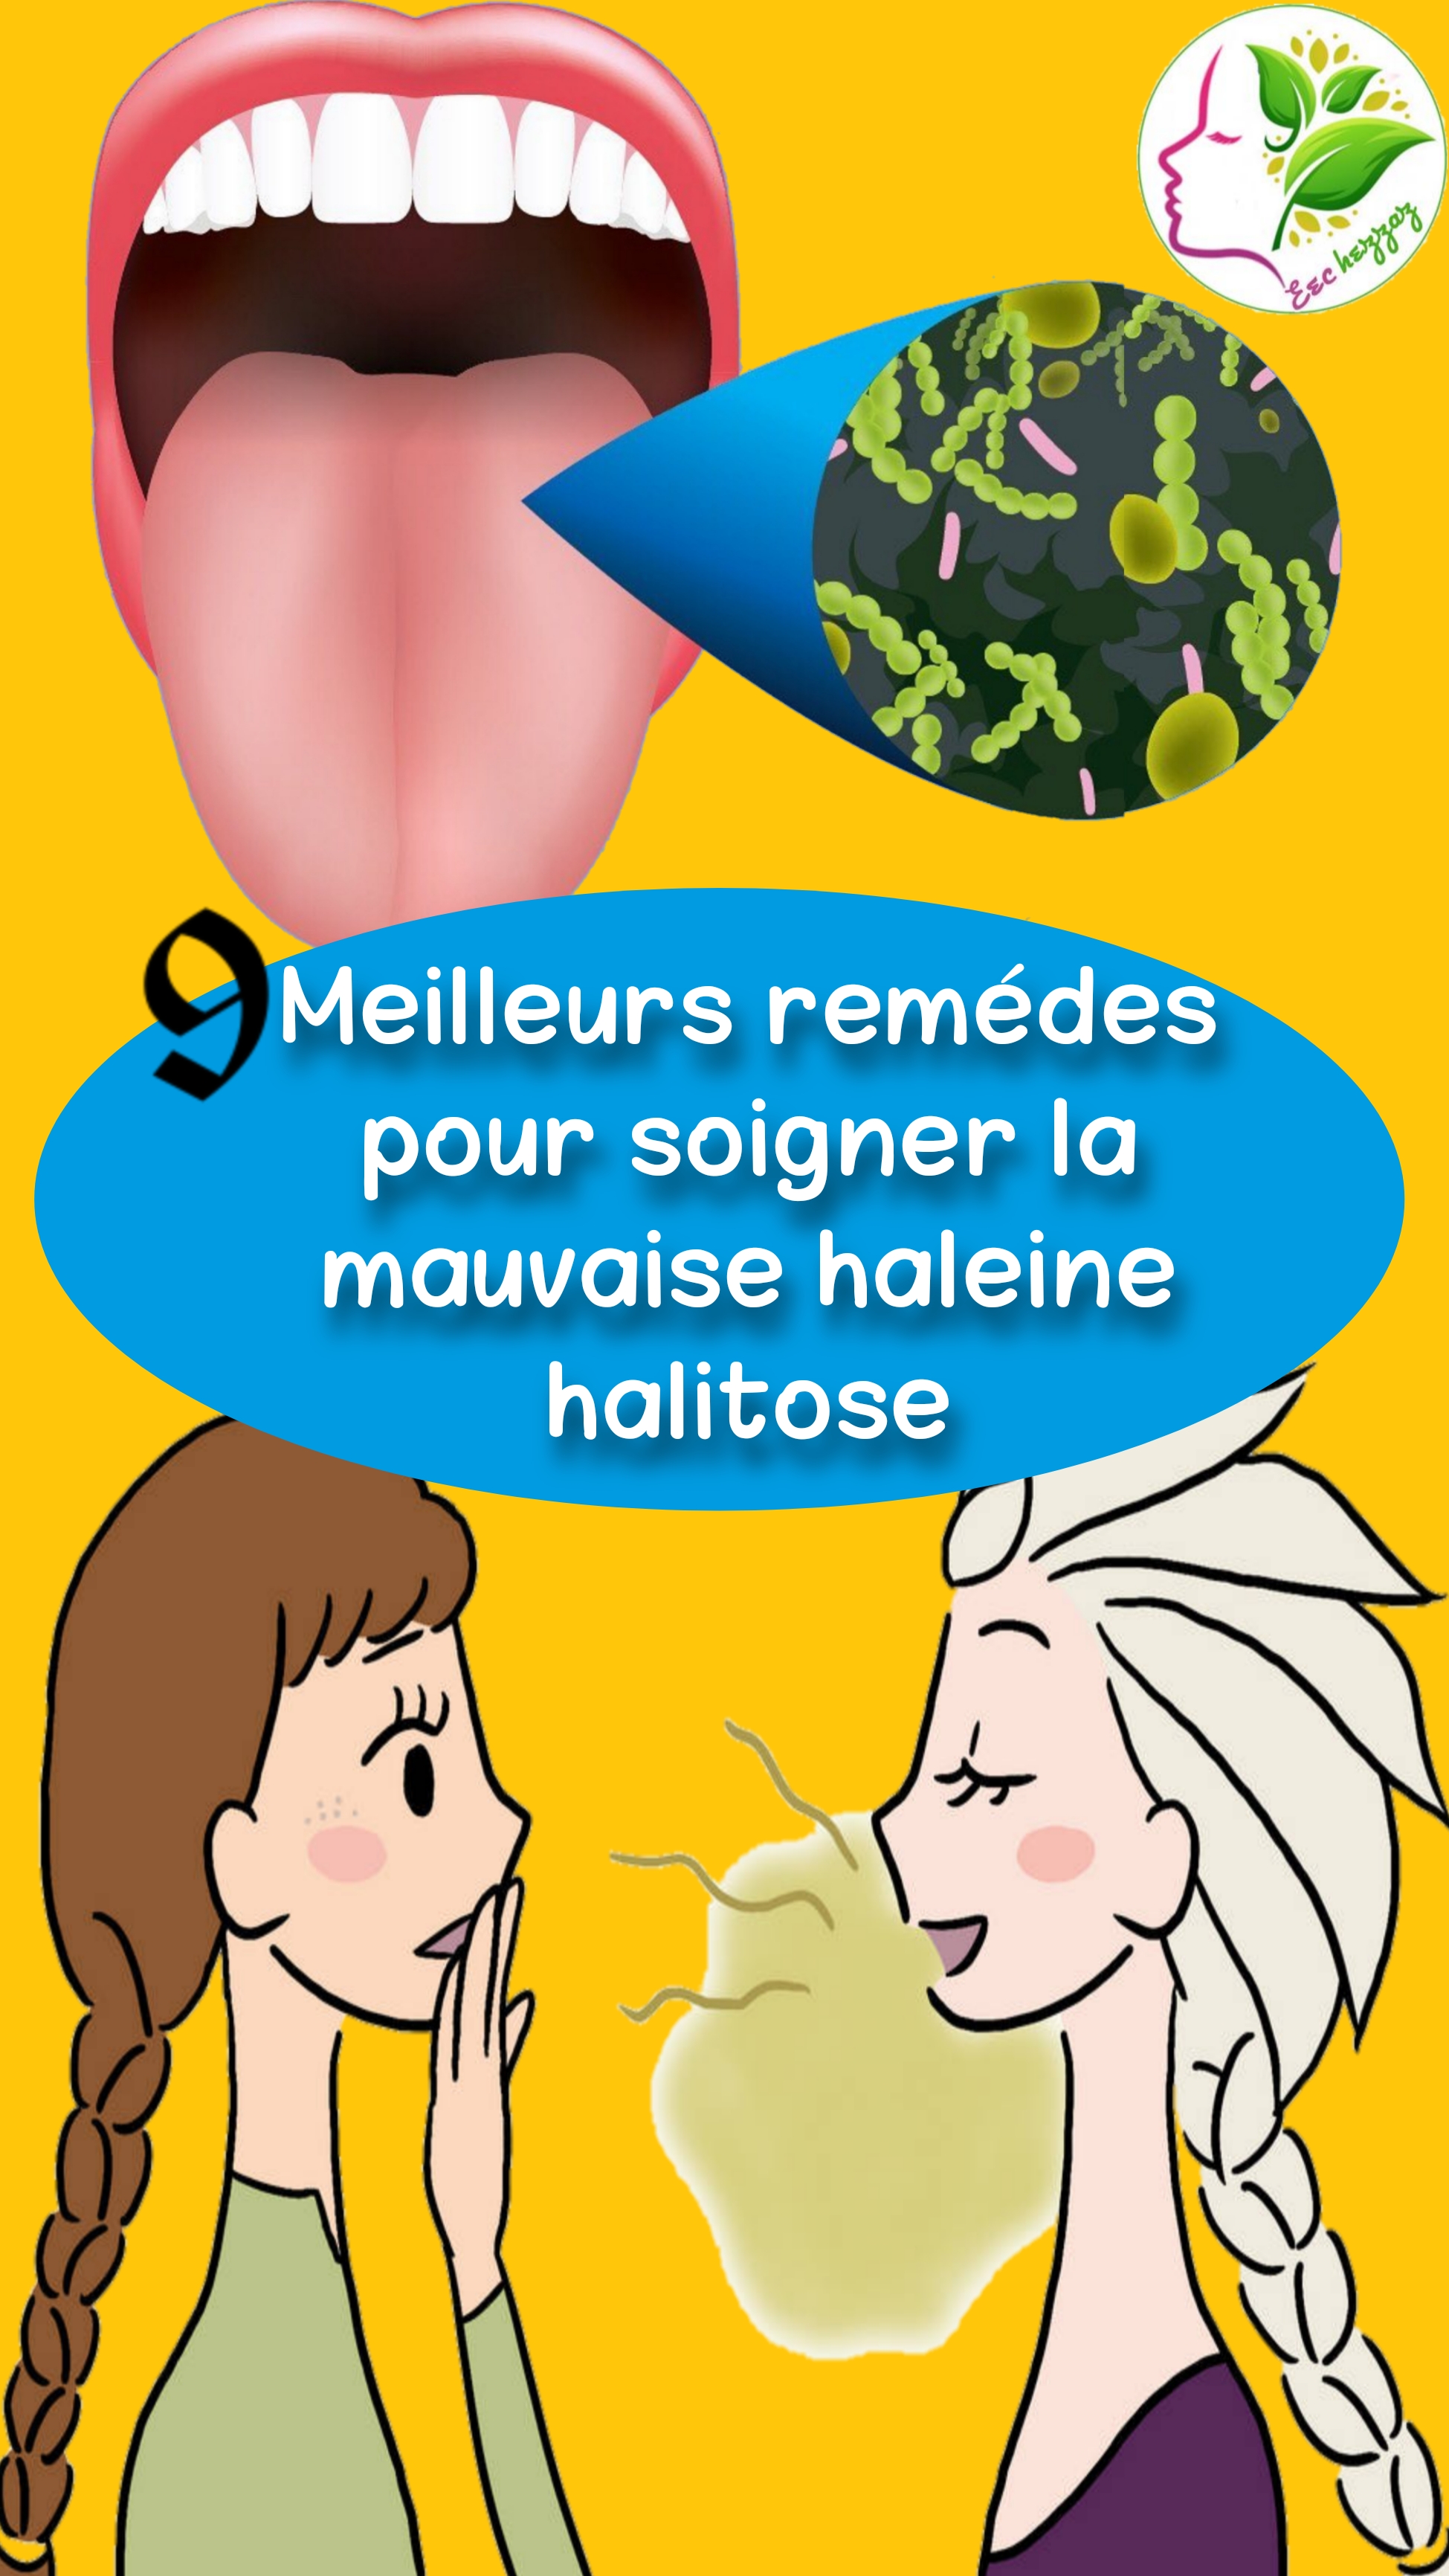 9 Meilleurs remédes pour soigner la mauvaise haleine halitose